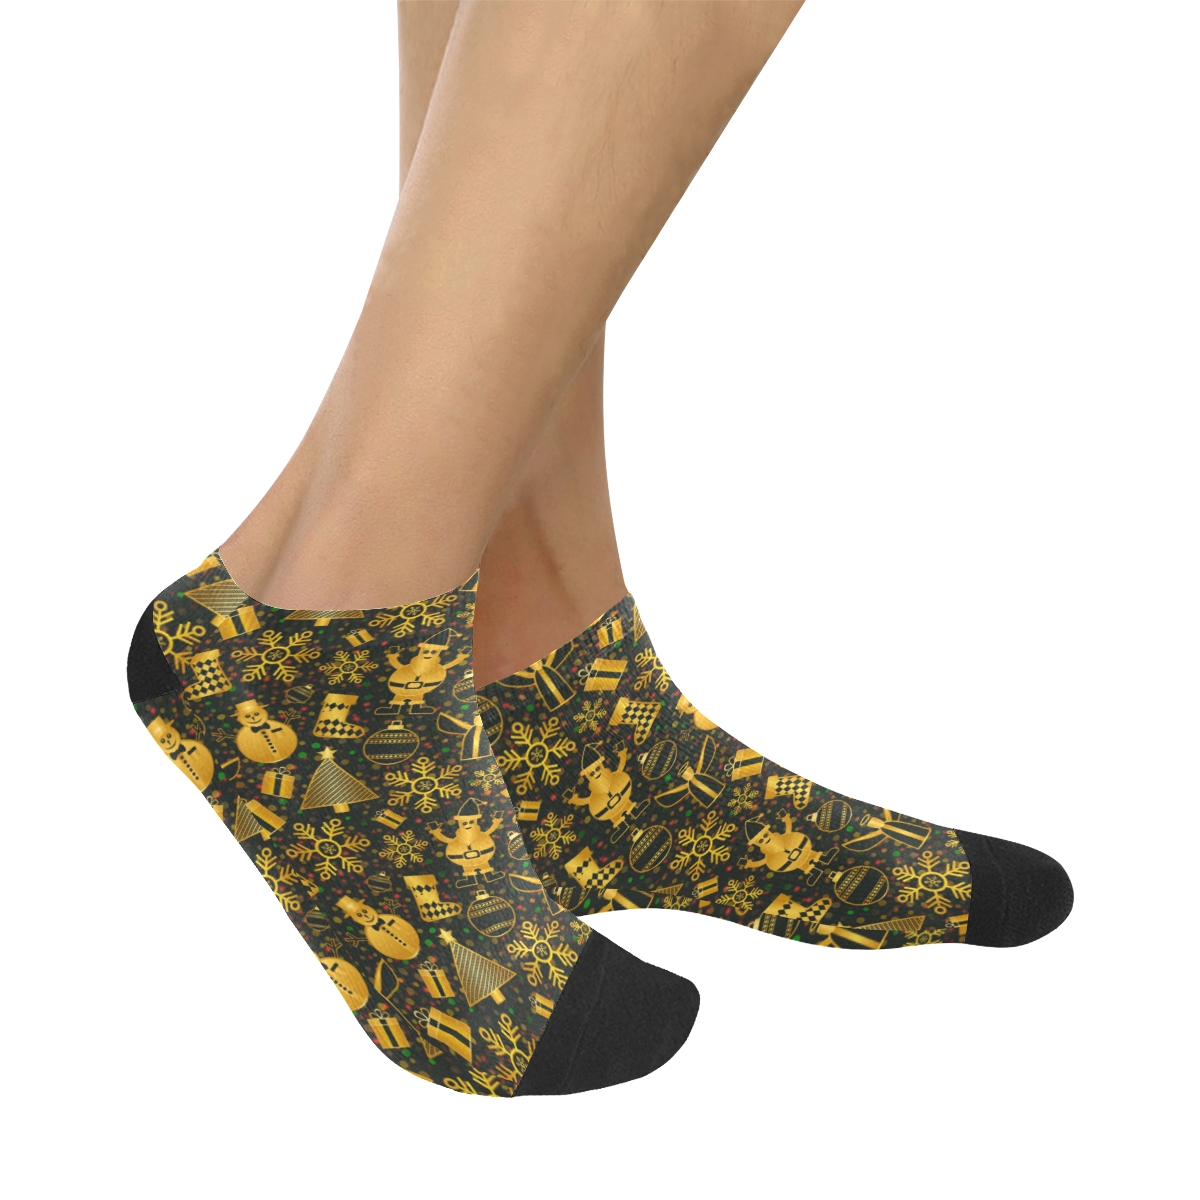 Golden Christmas Icons Women's Ankle Socks